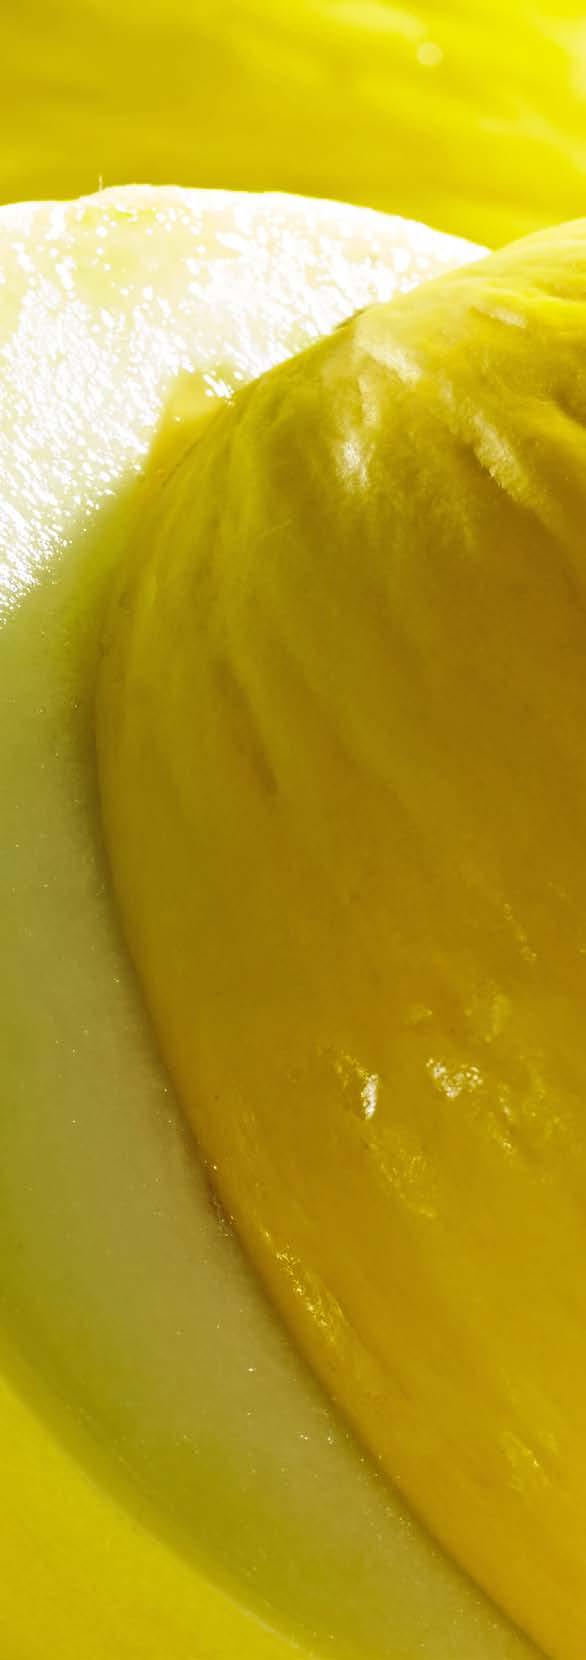 Melonowa świeżość KOKTAJL OWOCOWY SKŁADNIKI: 2 porcje 2 ogórki 1 1/2 szklanki miąższu melona miodowego 1 limonka garść świeżej mięty SPOSÓB WYKONANIA: Z ogórków i melona wycisnąć sok.